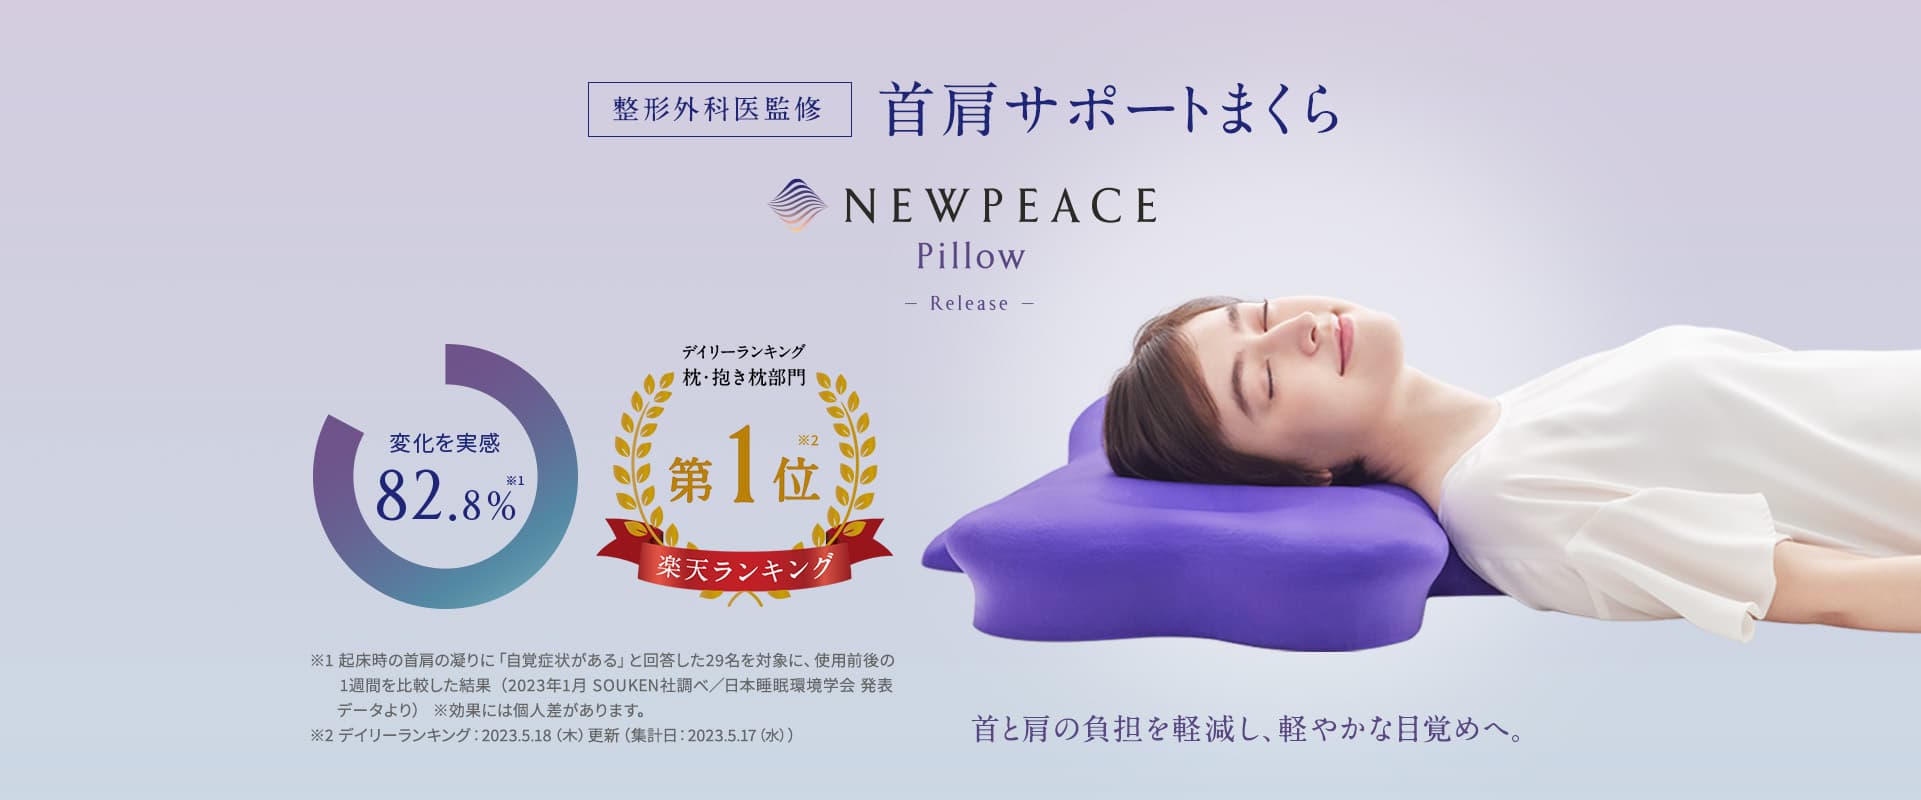 首肩サポートまくら NEWPEACE Pillow Releace 変化を実感：82.8%